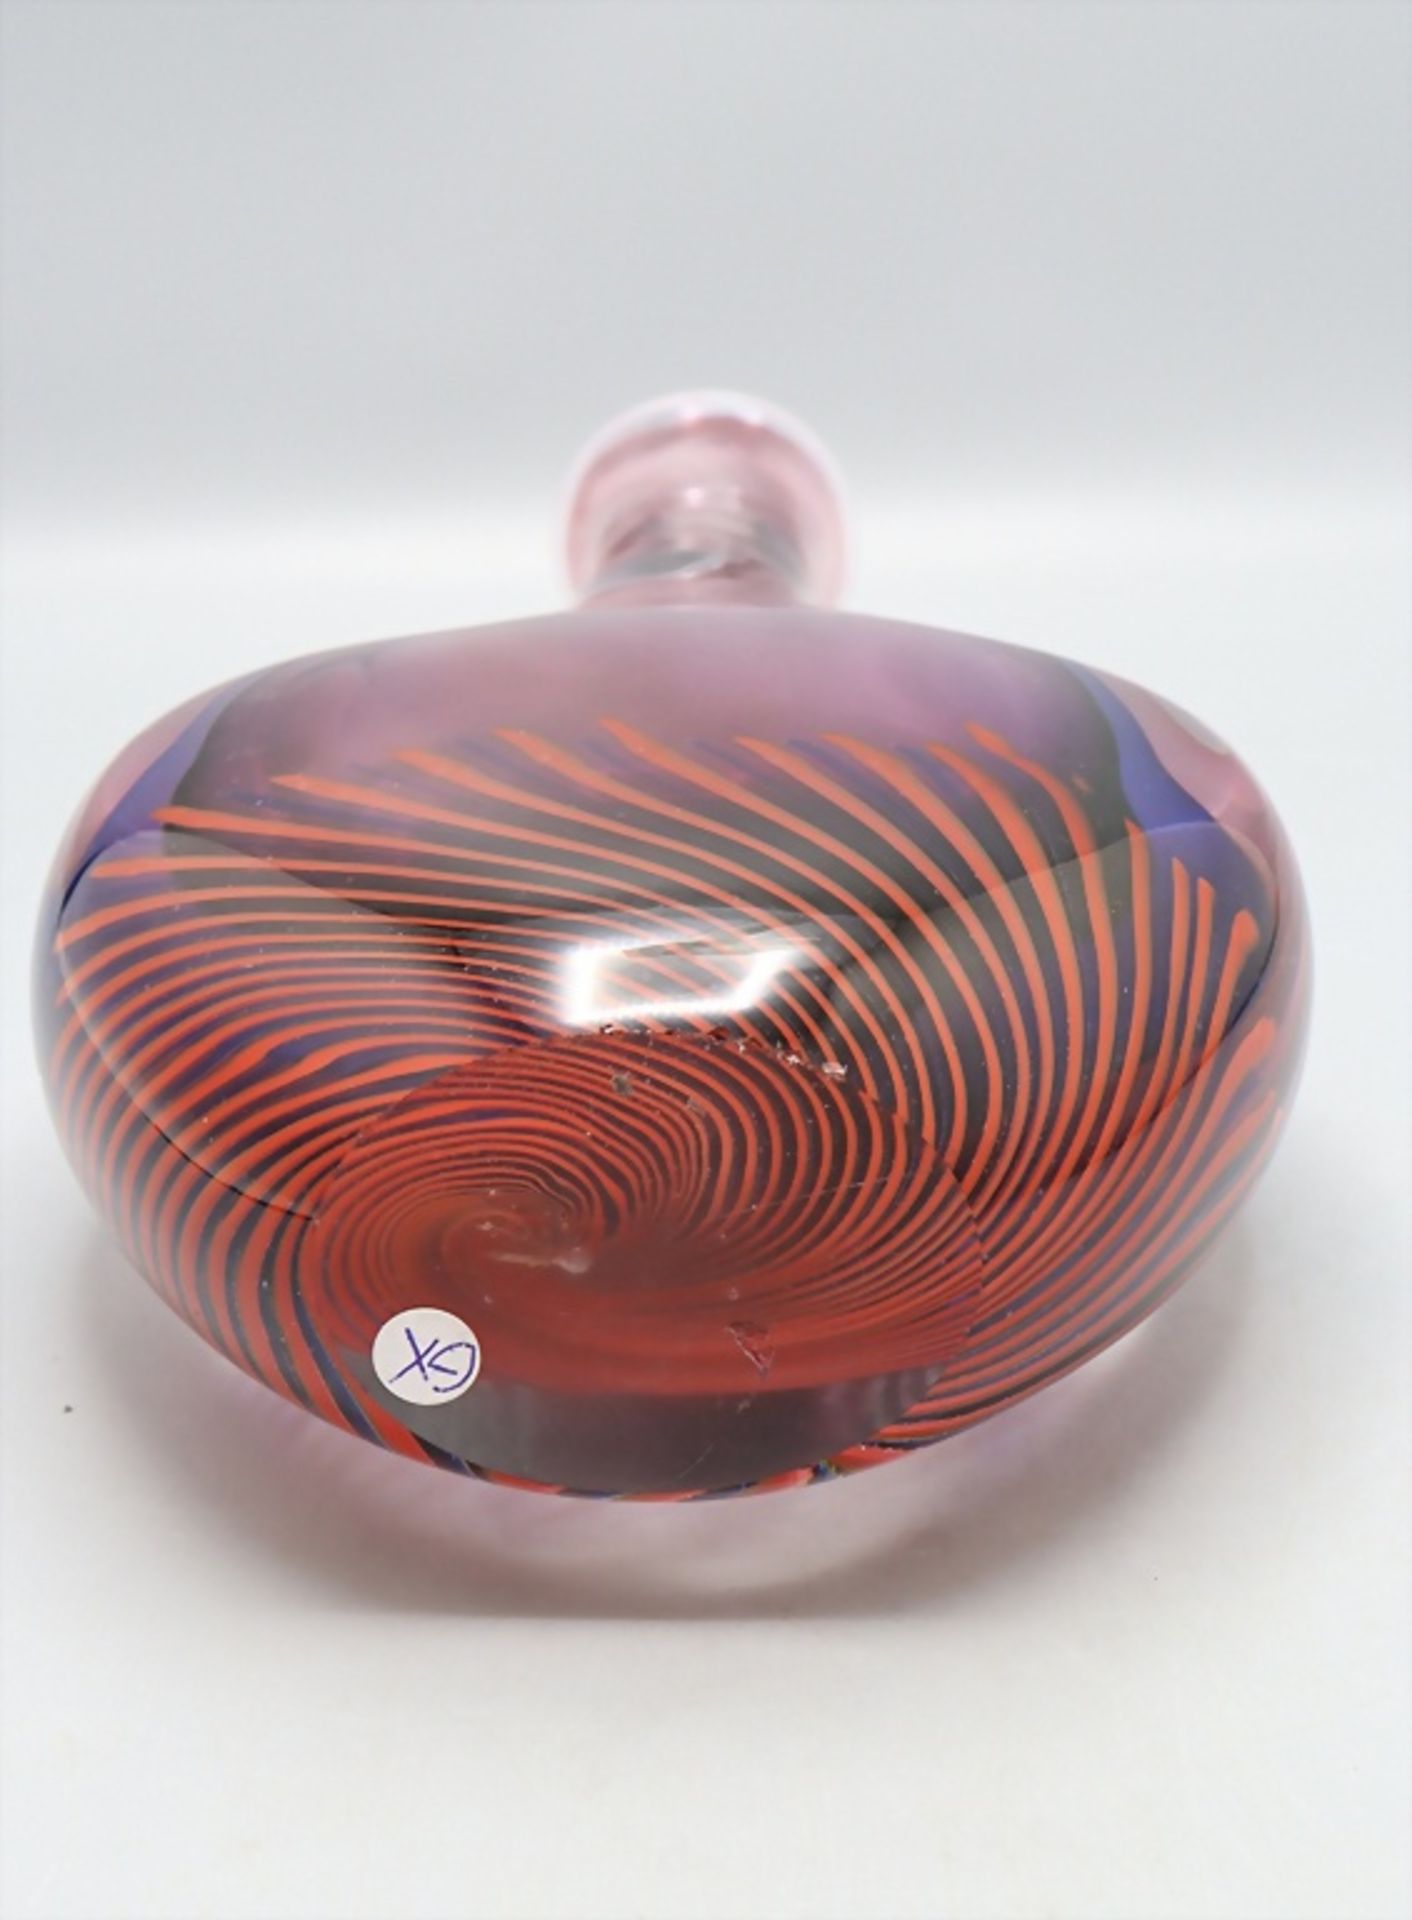 Glasziervase / A decorative glass vase 'Sommerso', Flavio Poli, Murano, 1960er Jahre - Bild 6 aus 6